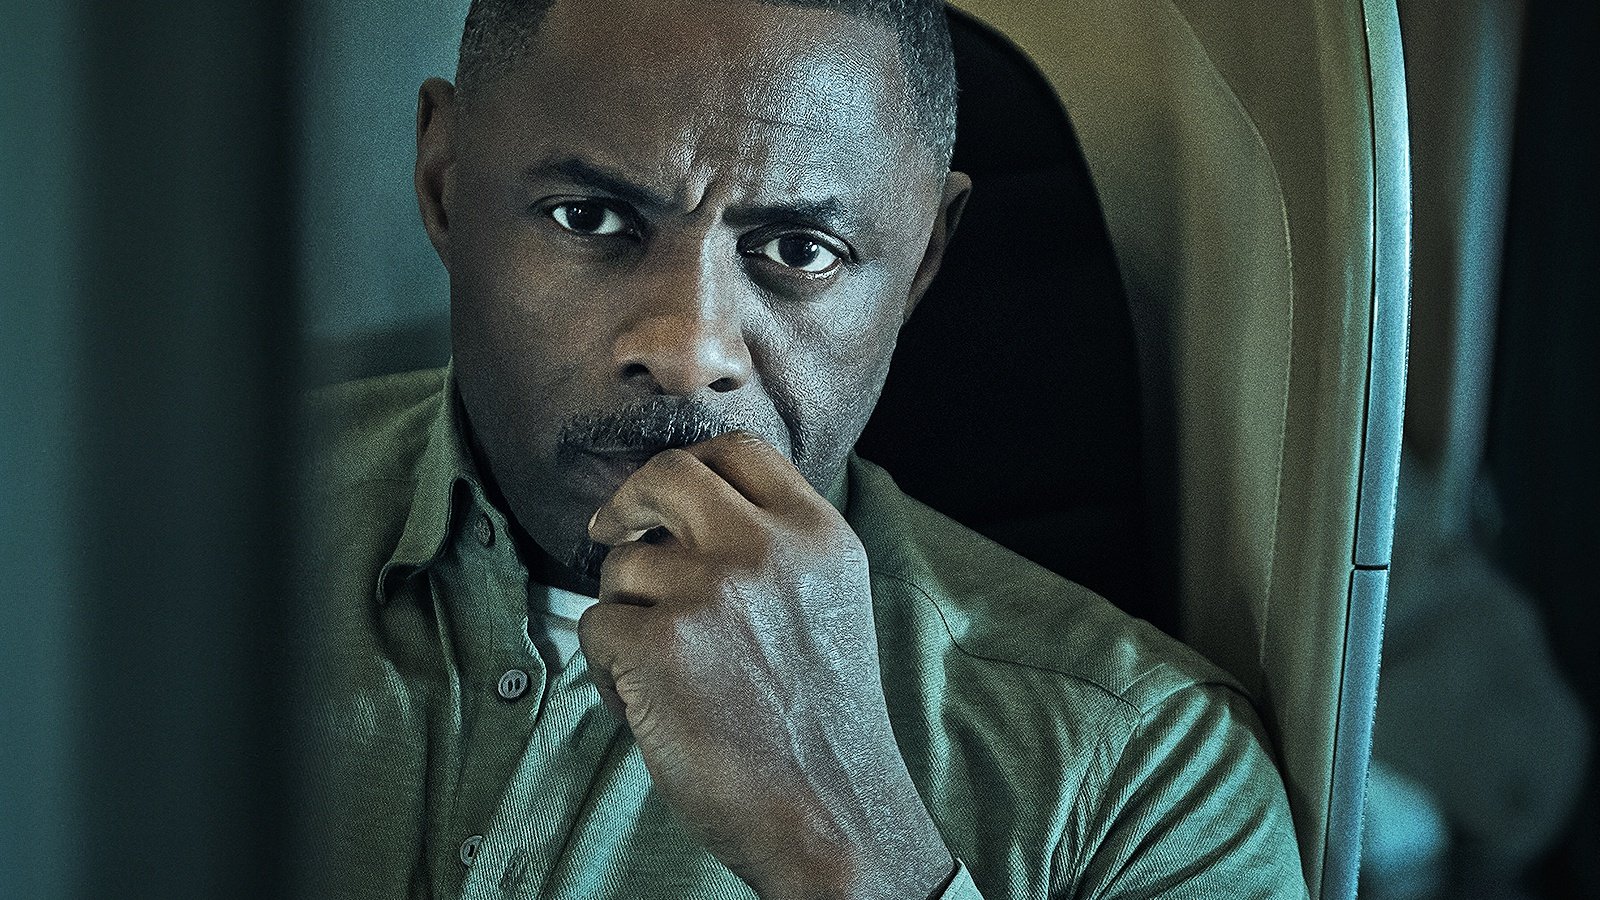 Scopri di più sull'articolo Hijack in Streaming 4k: Analisi Dettagliata del Thriller con Idris Elba